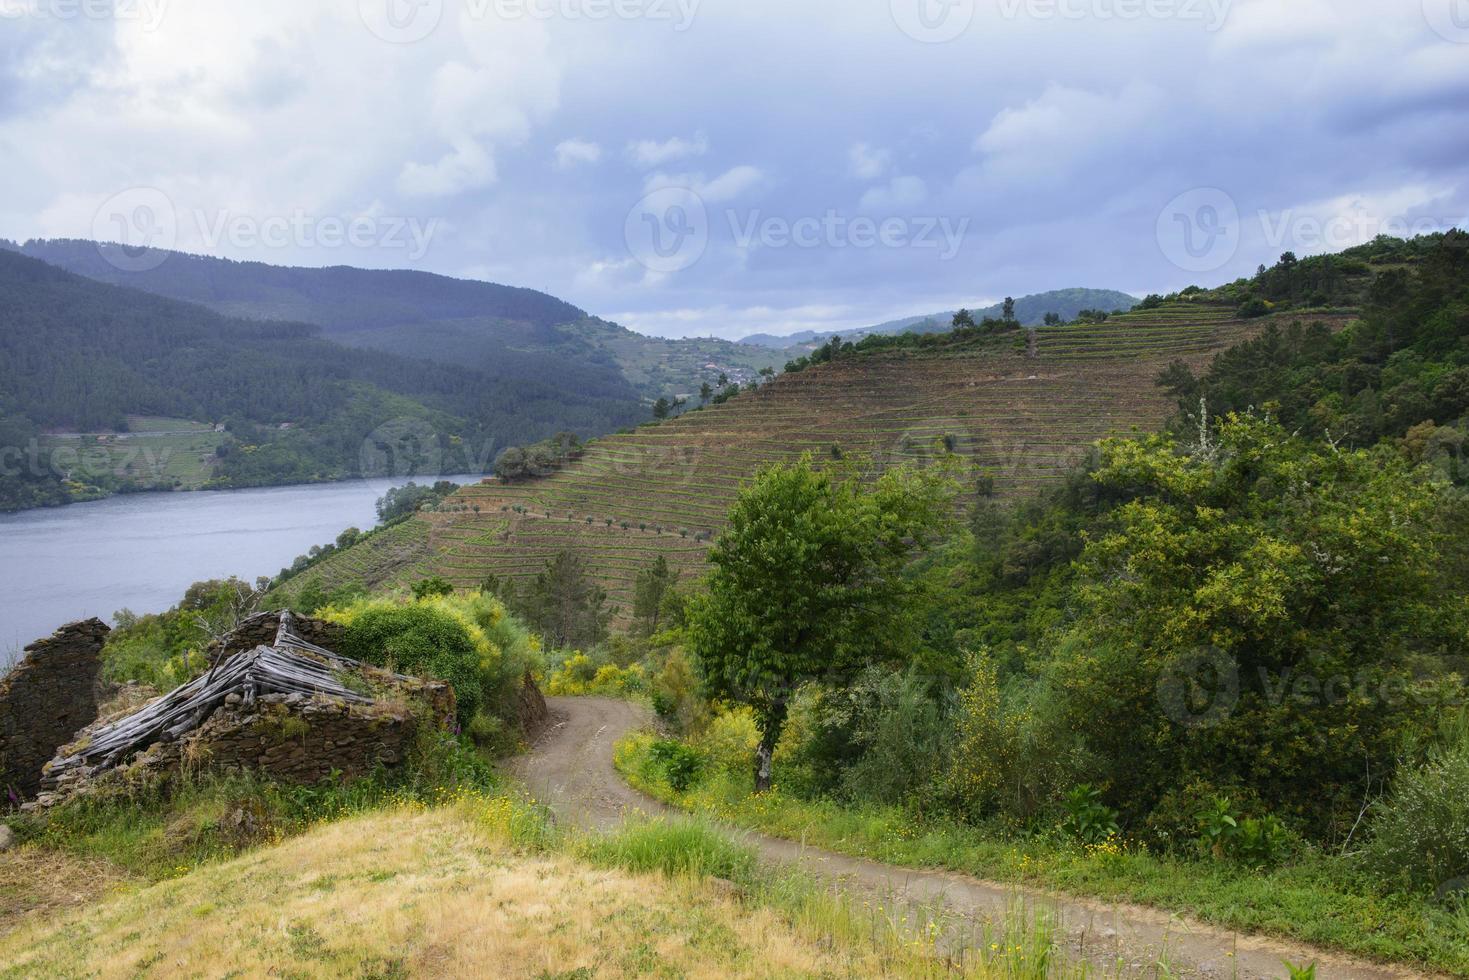 Landschaft von terrassierten Weinbergen am Minho-Fluss in Ribeira Sacra, Galicien, Spanien? foto